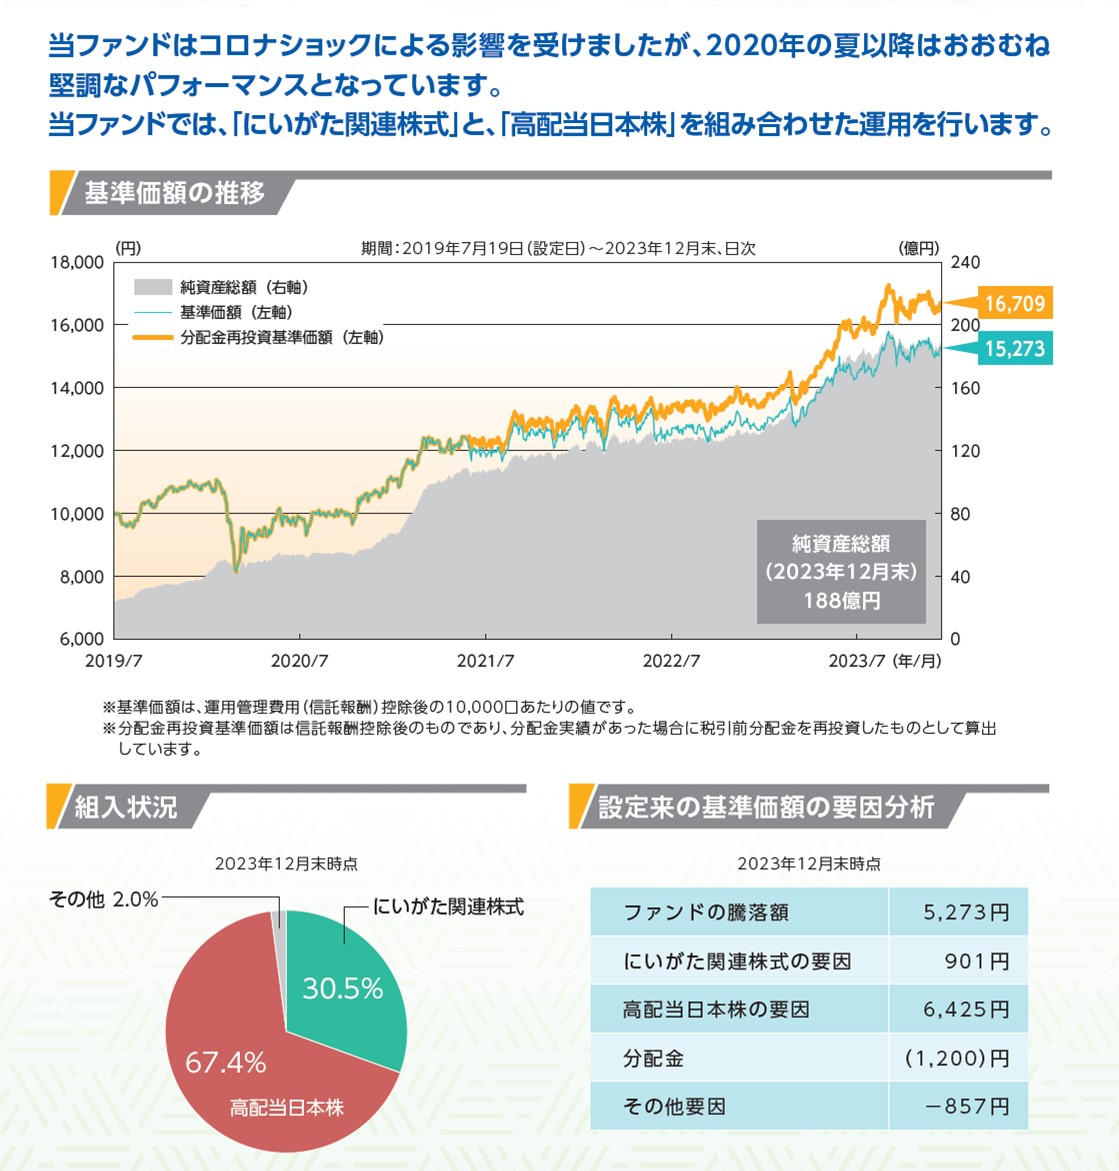 「にいがた未来応援日本株ファンド（以下、当ファンド）」の過去におけるシミュレーションでは、良好なパフォーマンスとなっています。